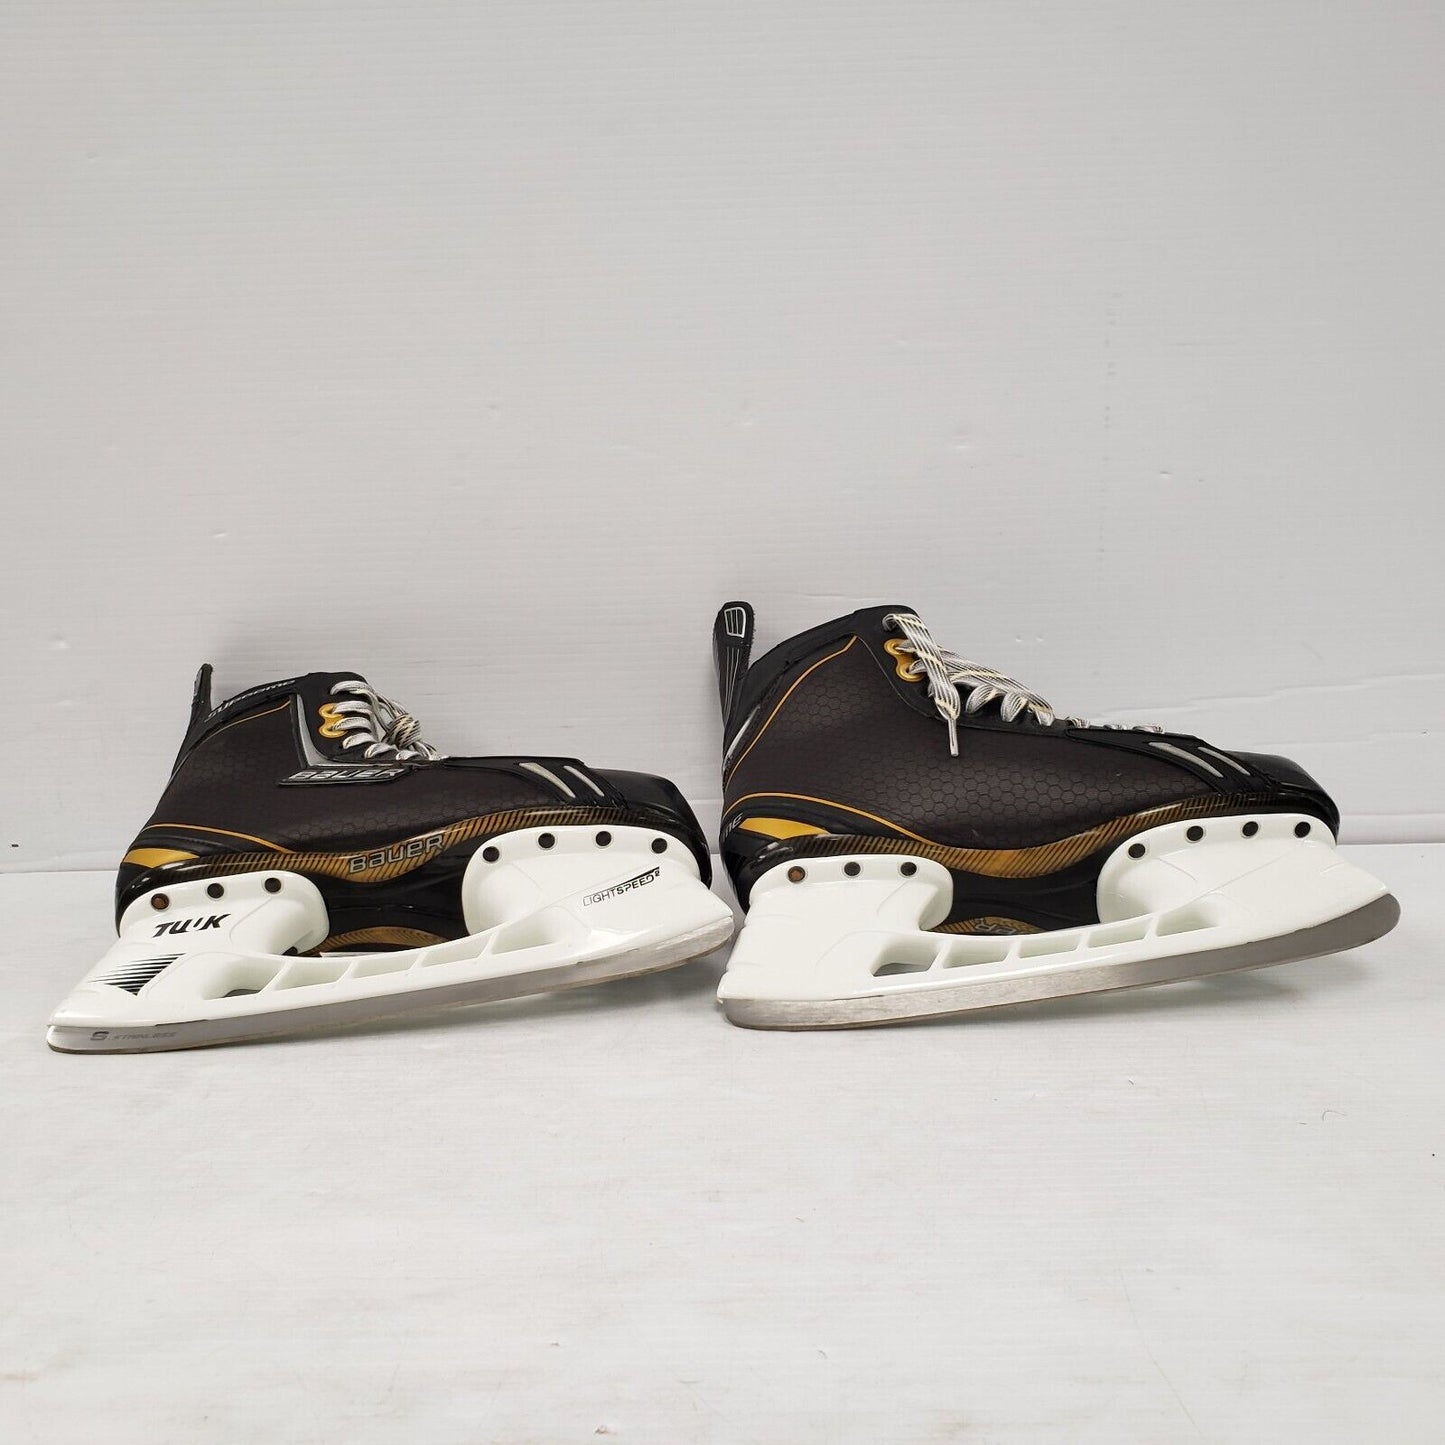 (40195-1) Reebok Supreme One Skates - Size 8